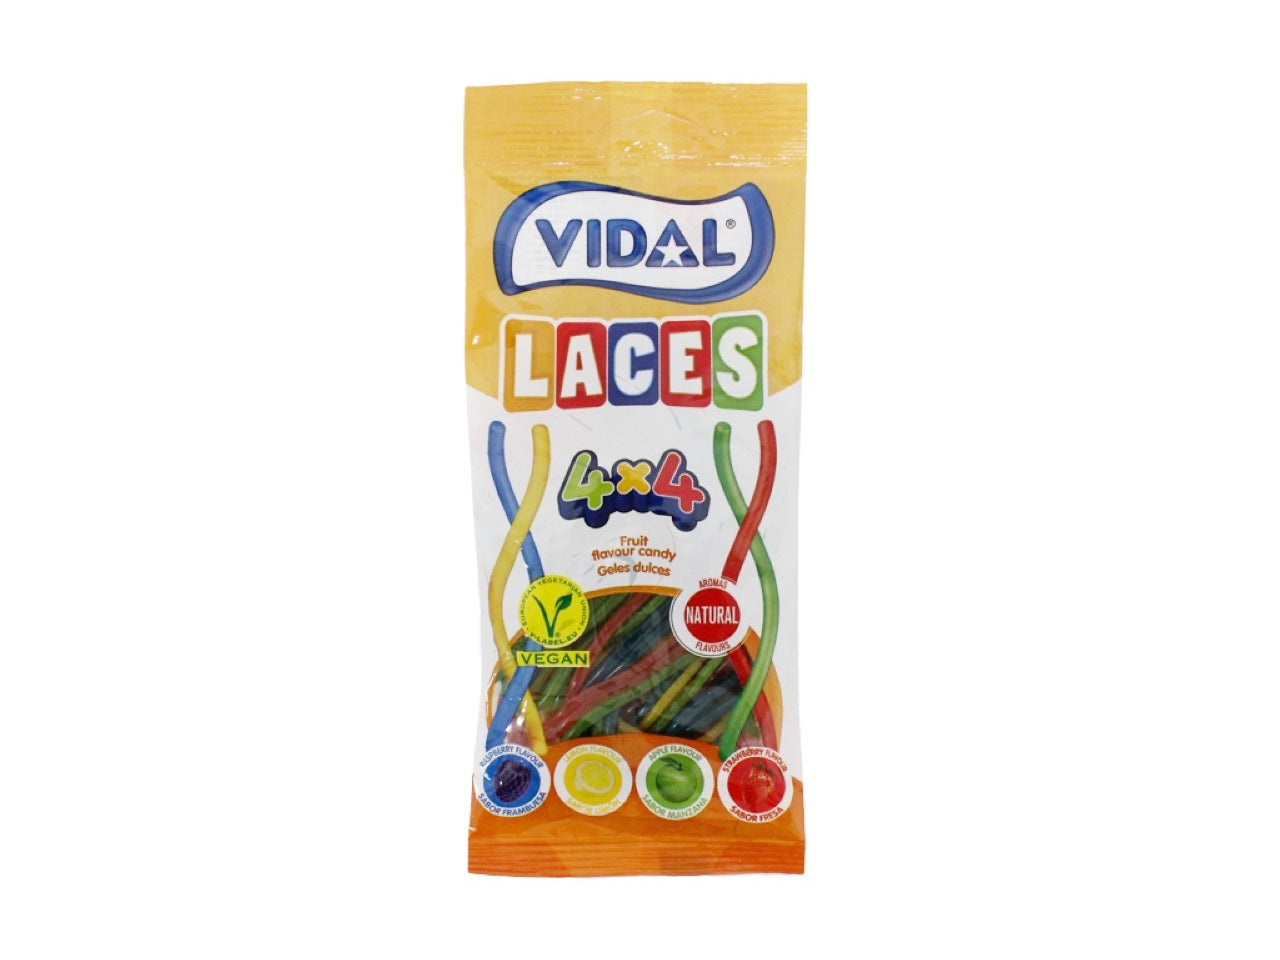 Vidal laces caramelle gommose 85gr a forma di spaghetti 4 gusti e 4 colori assortiti